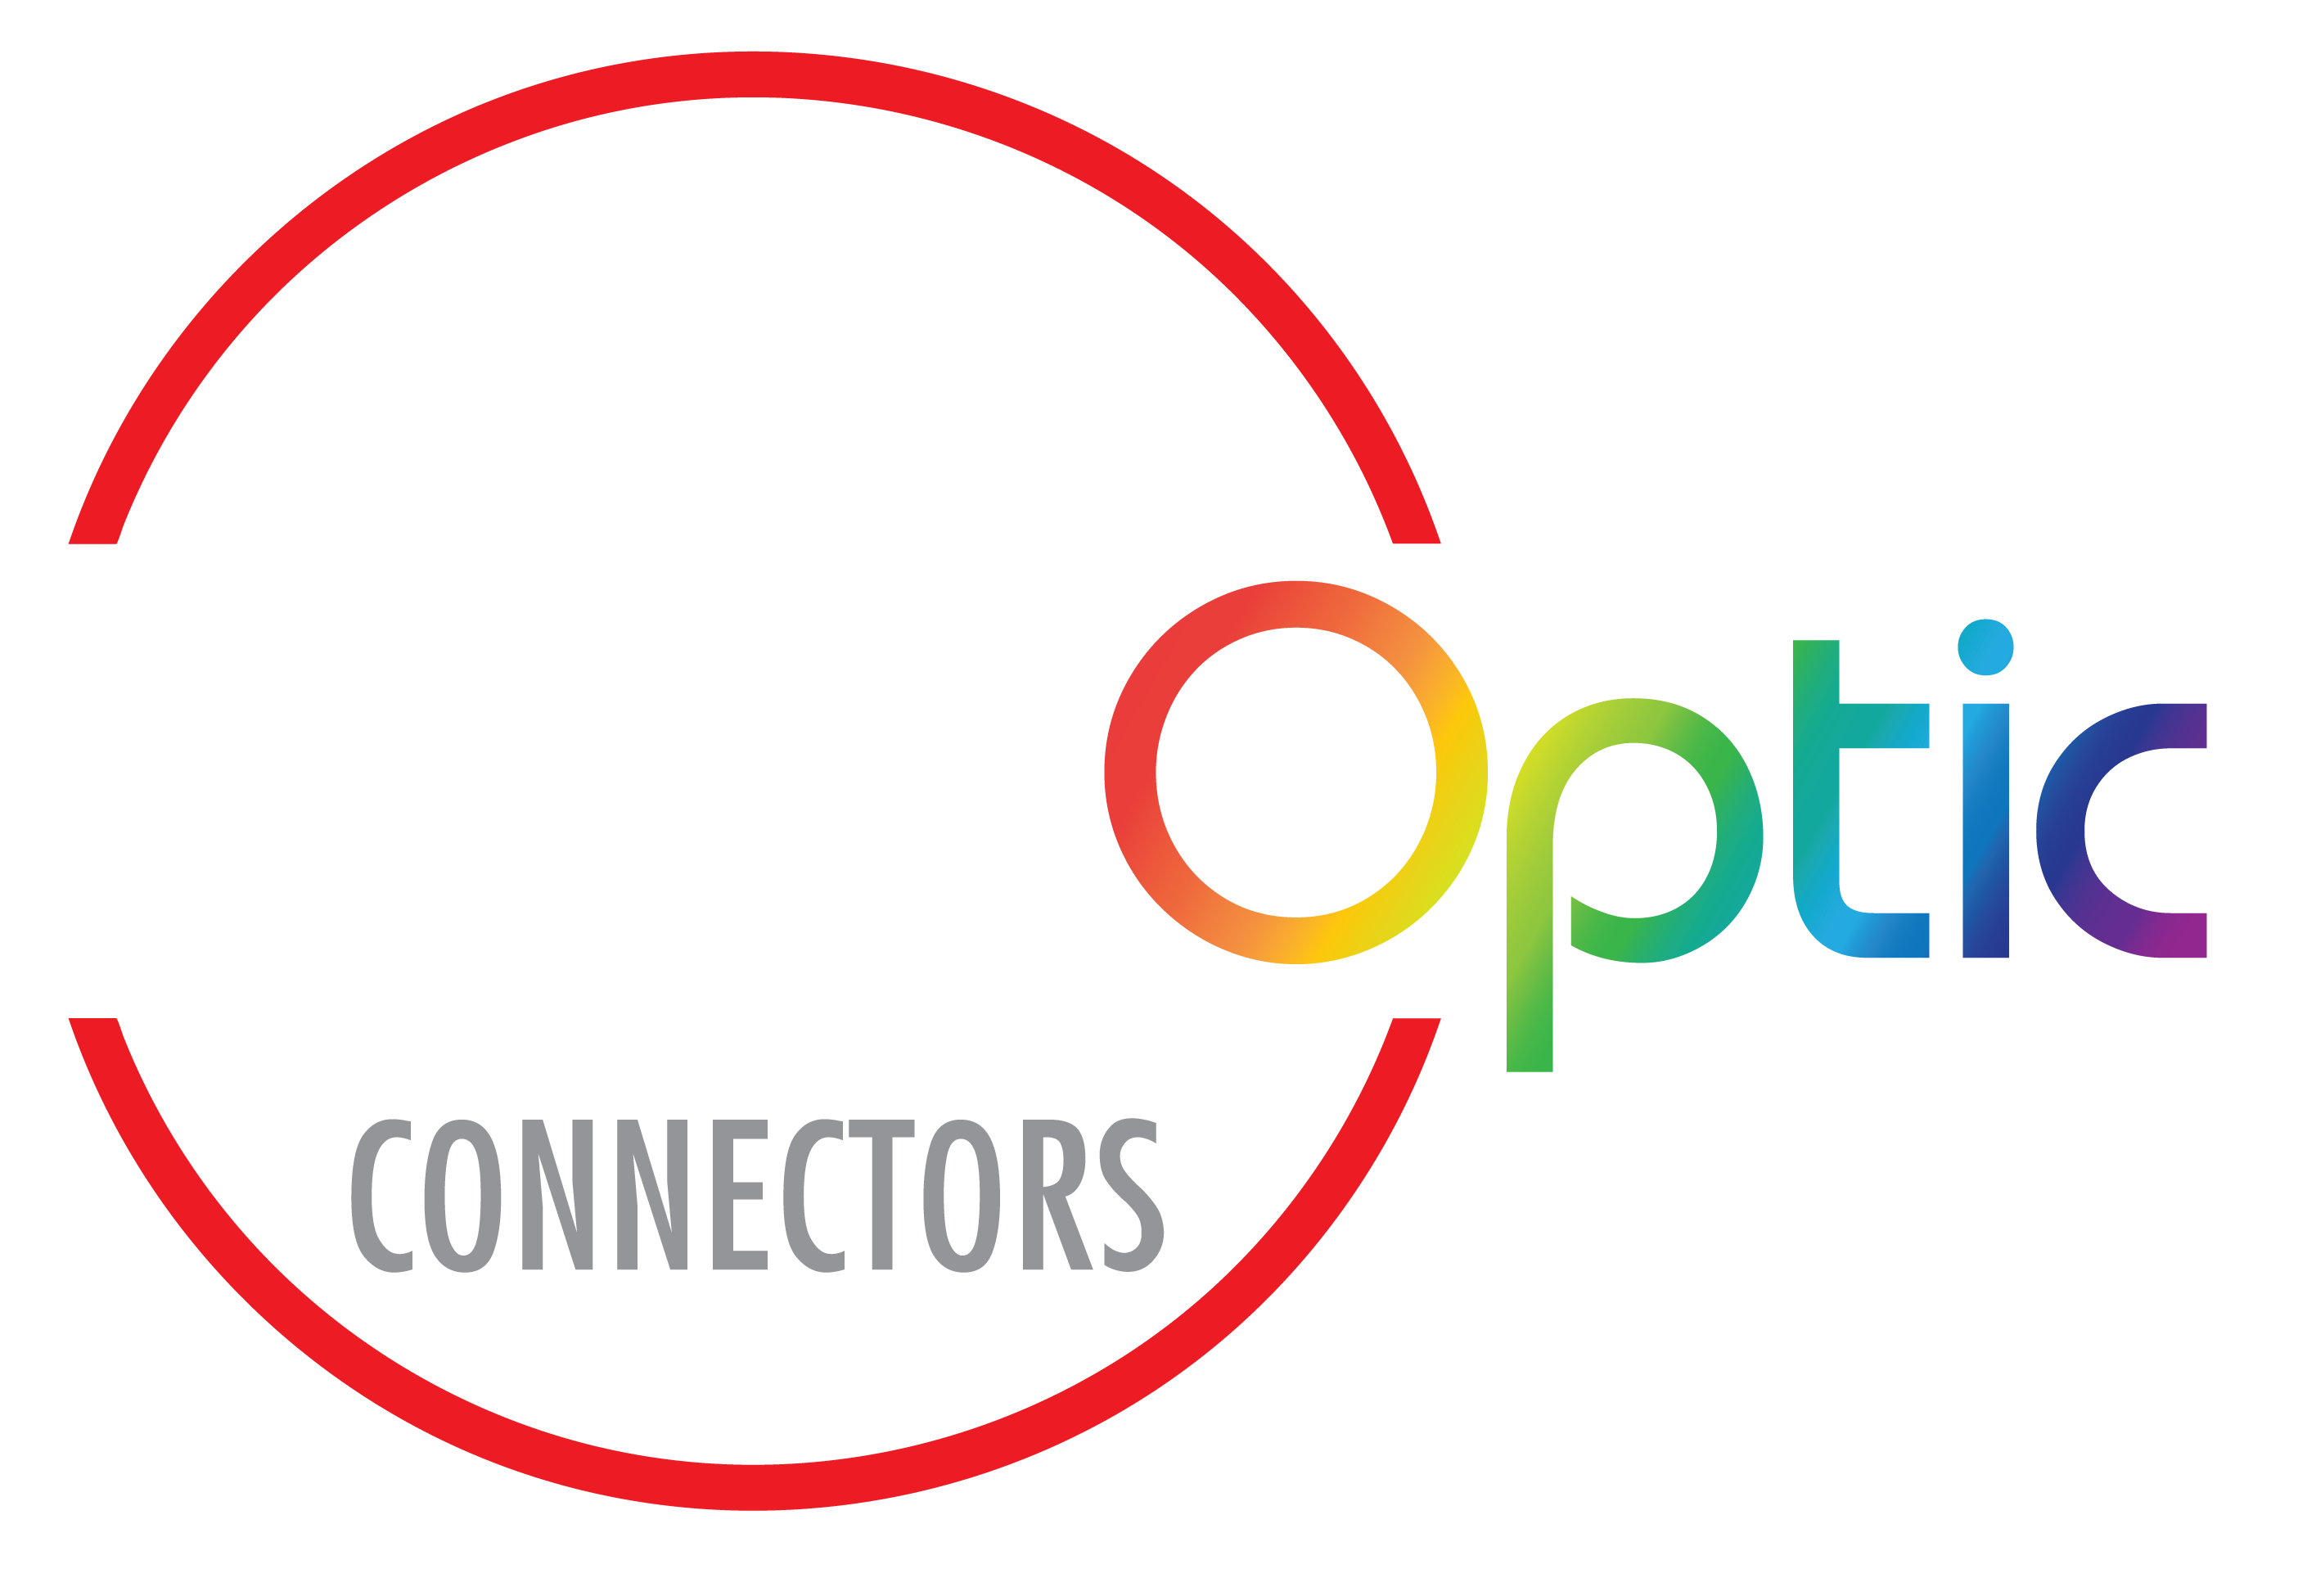 Rugged Fiber Optic Connectors